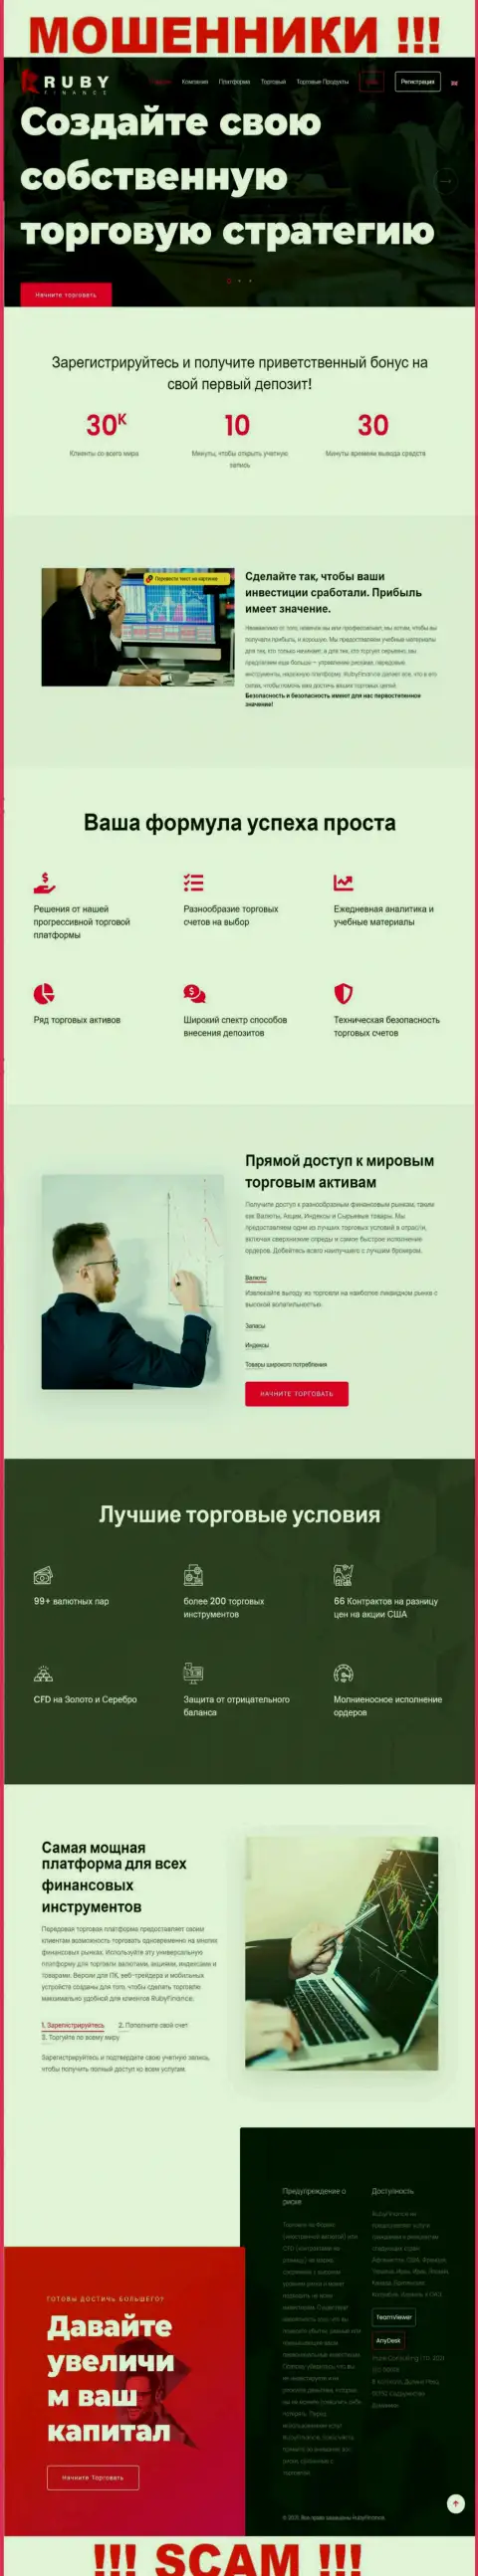 Официальный интернет-сервис мошенников Руби Финанс, переполненный сведениями для лохов